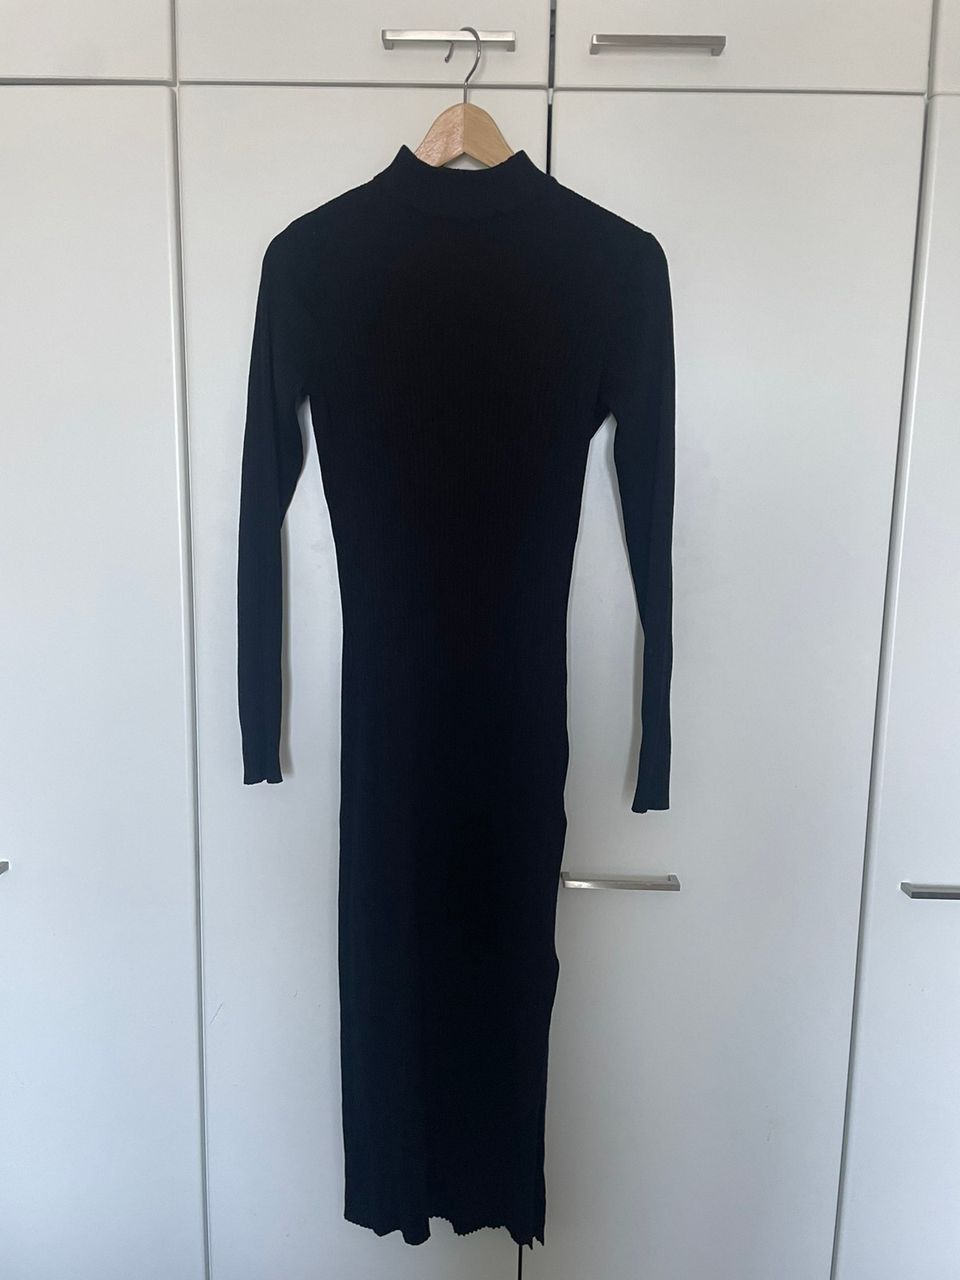 Musta pitkä mekko